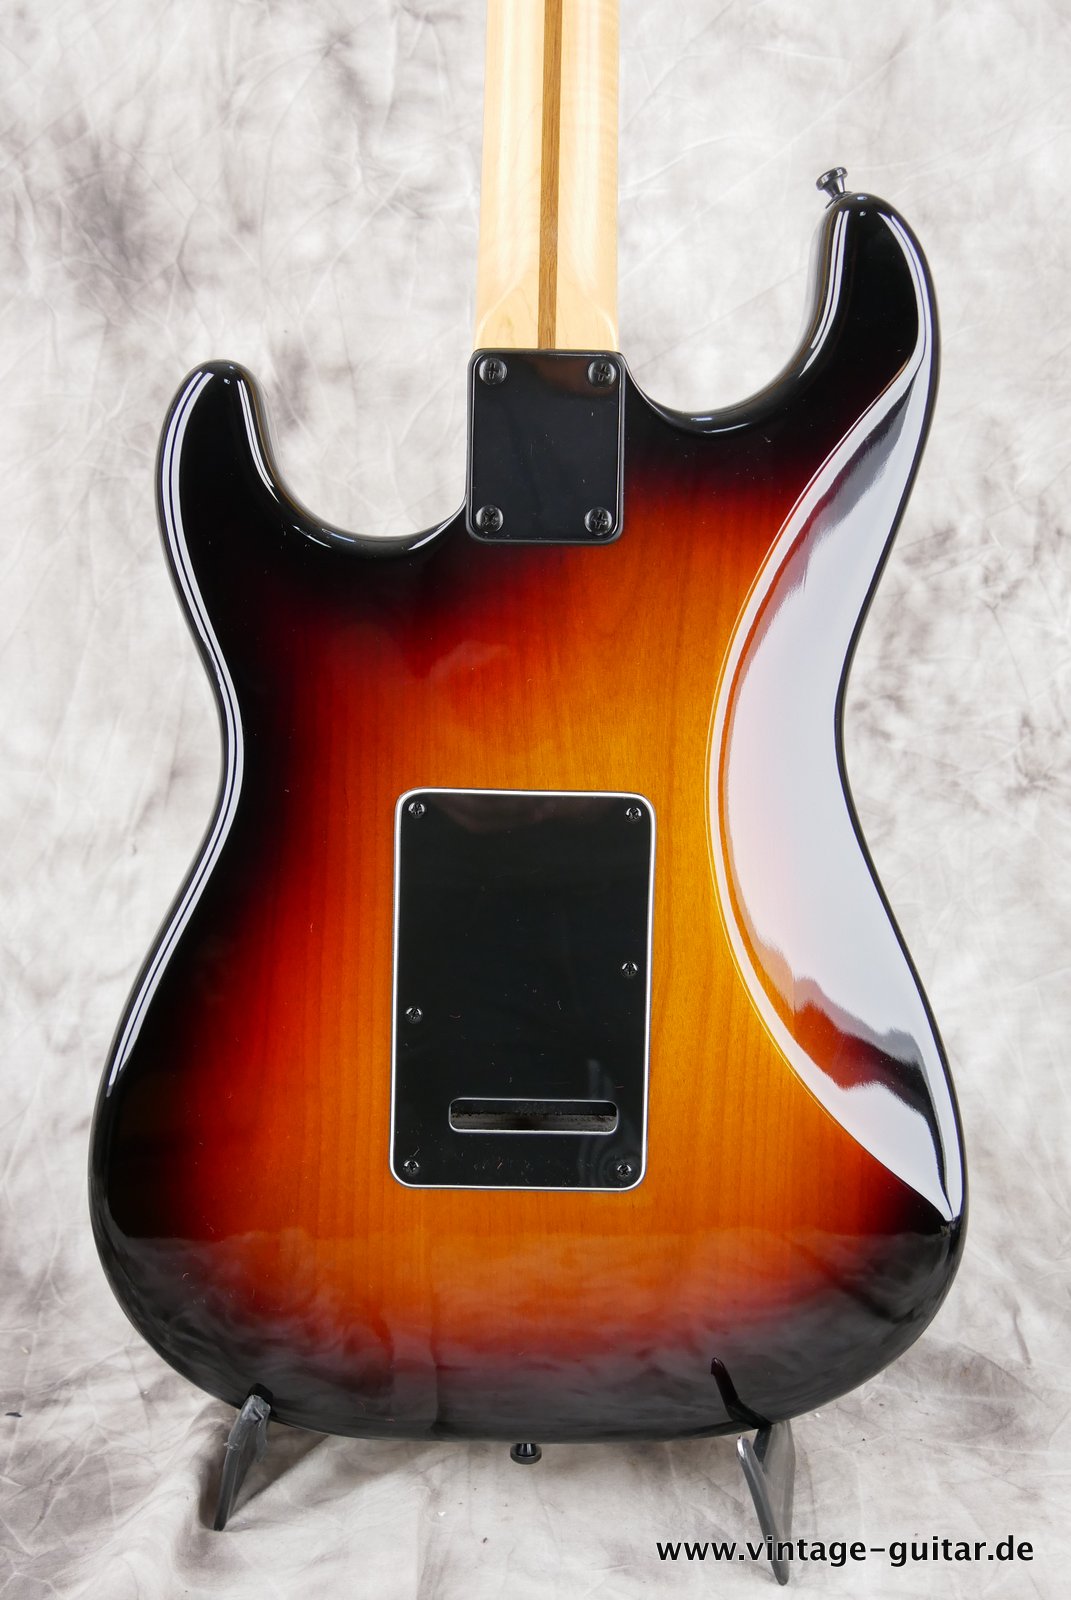 Fender-Stratocaster-2014-US-Standard-black-hardware-004.JPG